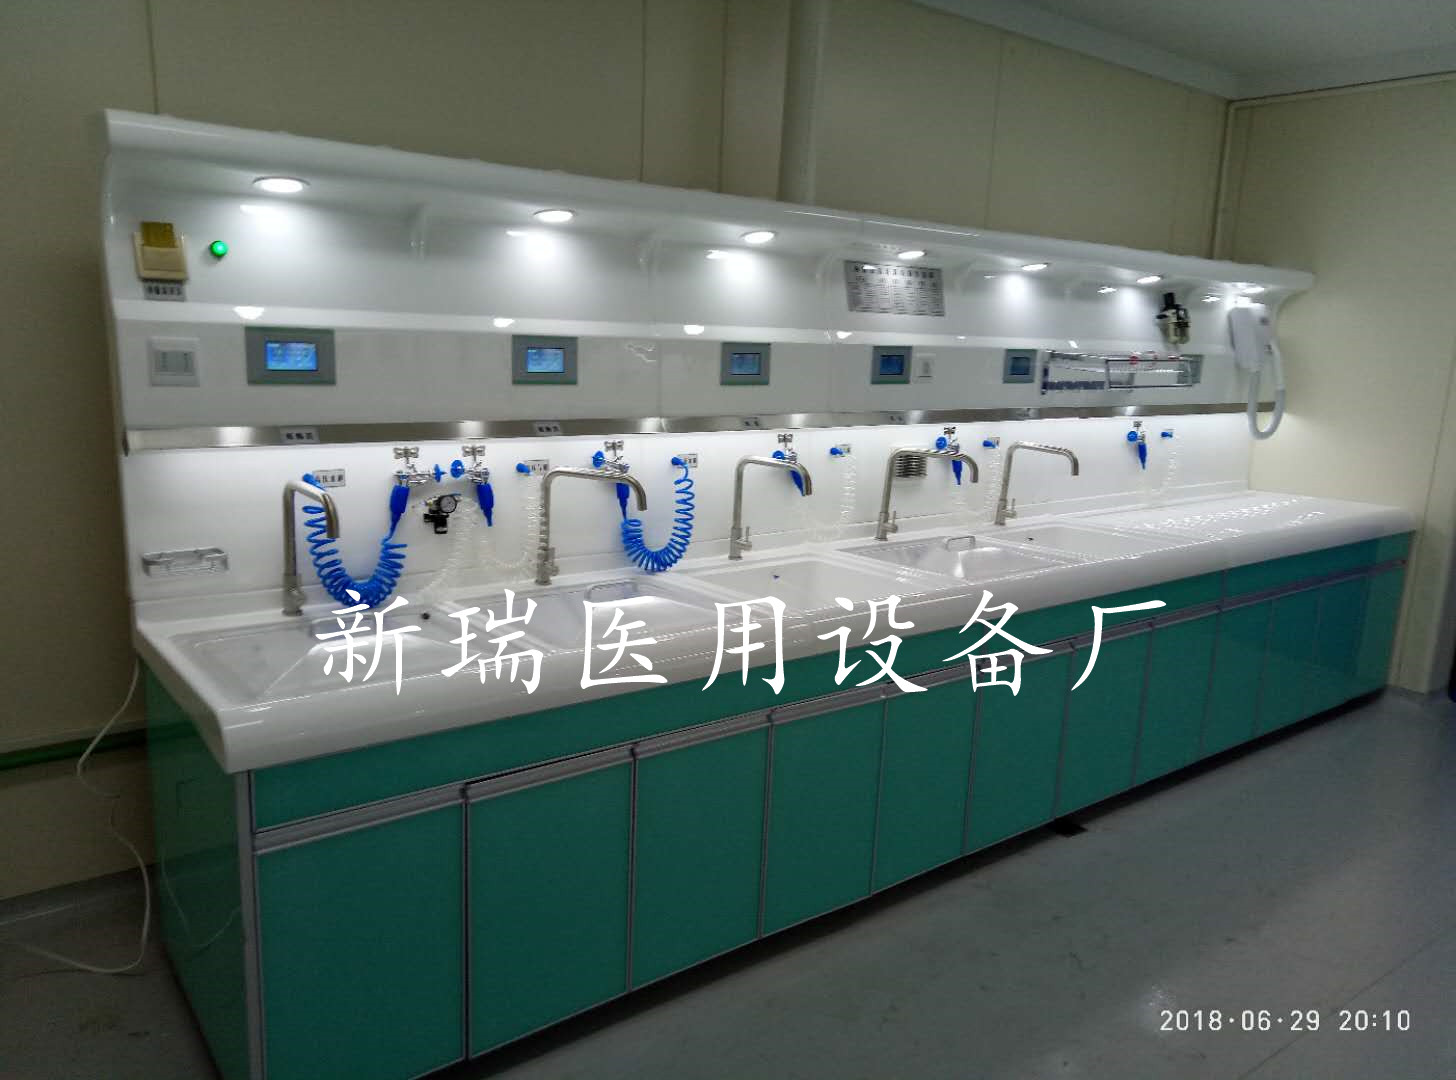 清洗中心 胃镜清洗工作站 一体化清洗设备